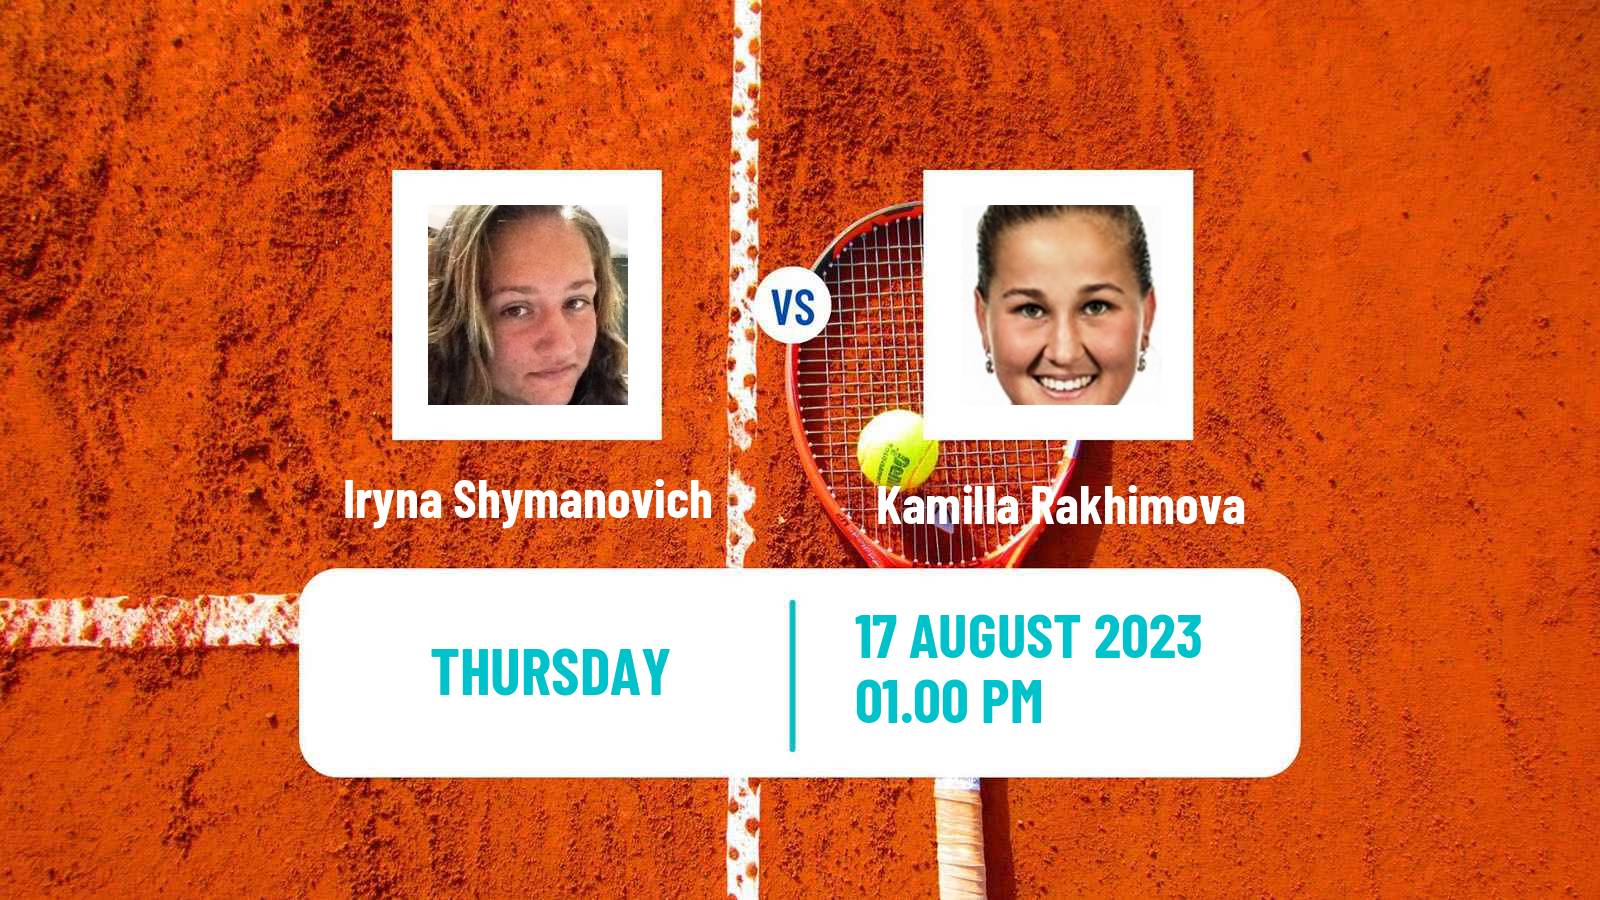 Tennis Stanford Challenger Women Iryna Shymanovich - Kamilla Rakhimova